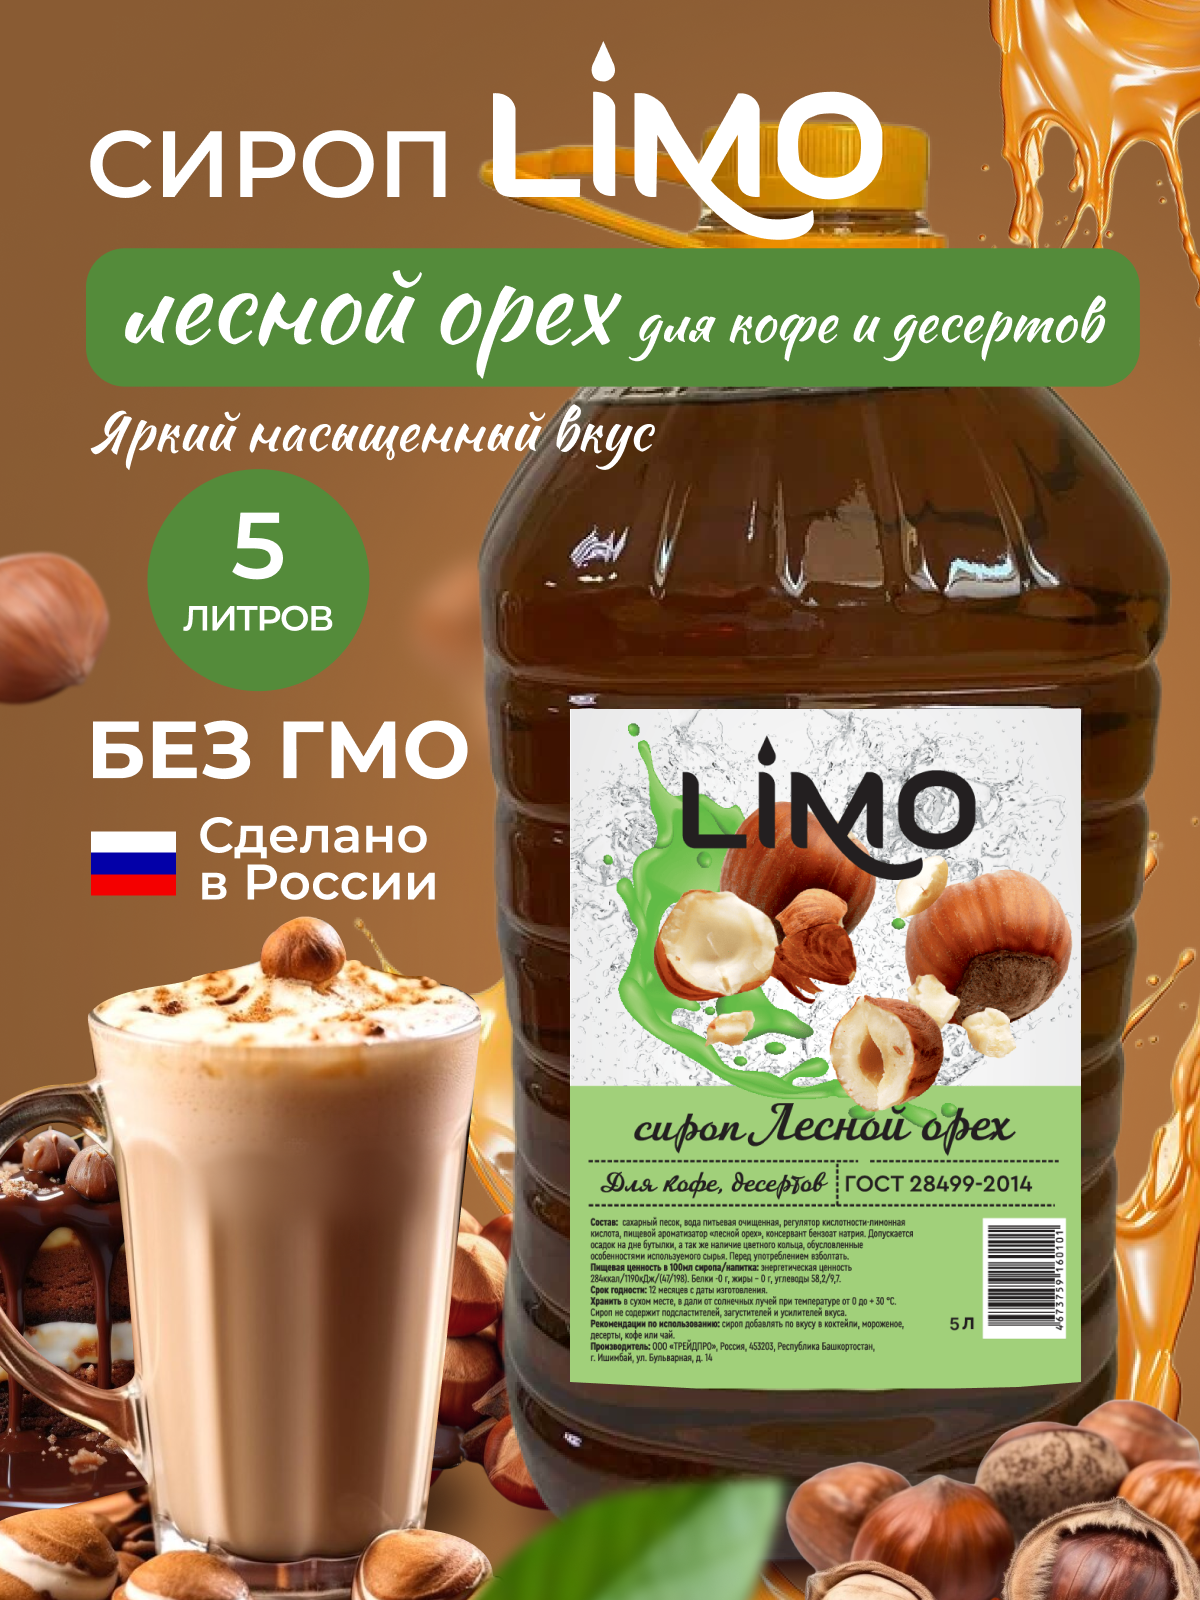 Сироп LIMO Лесной Орех (для кофе и десертов), 5 литров